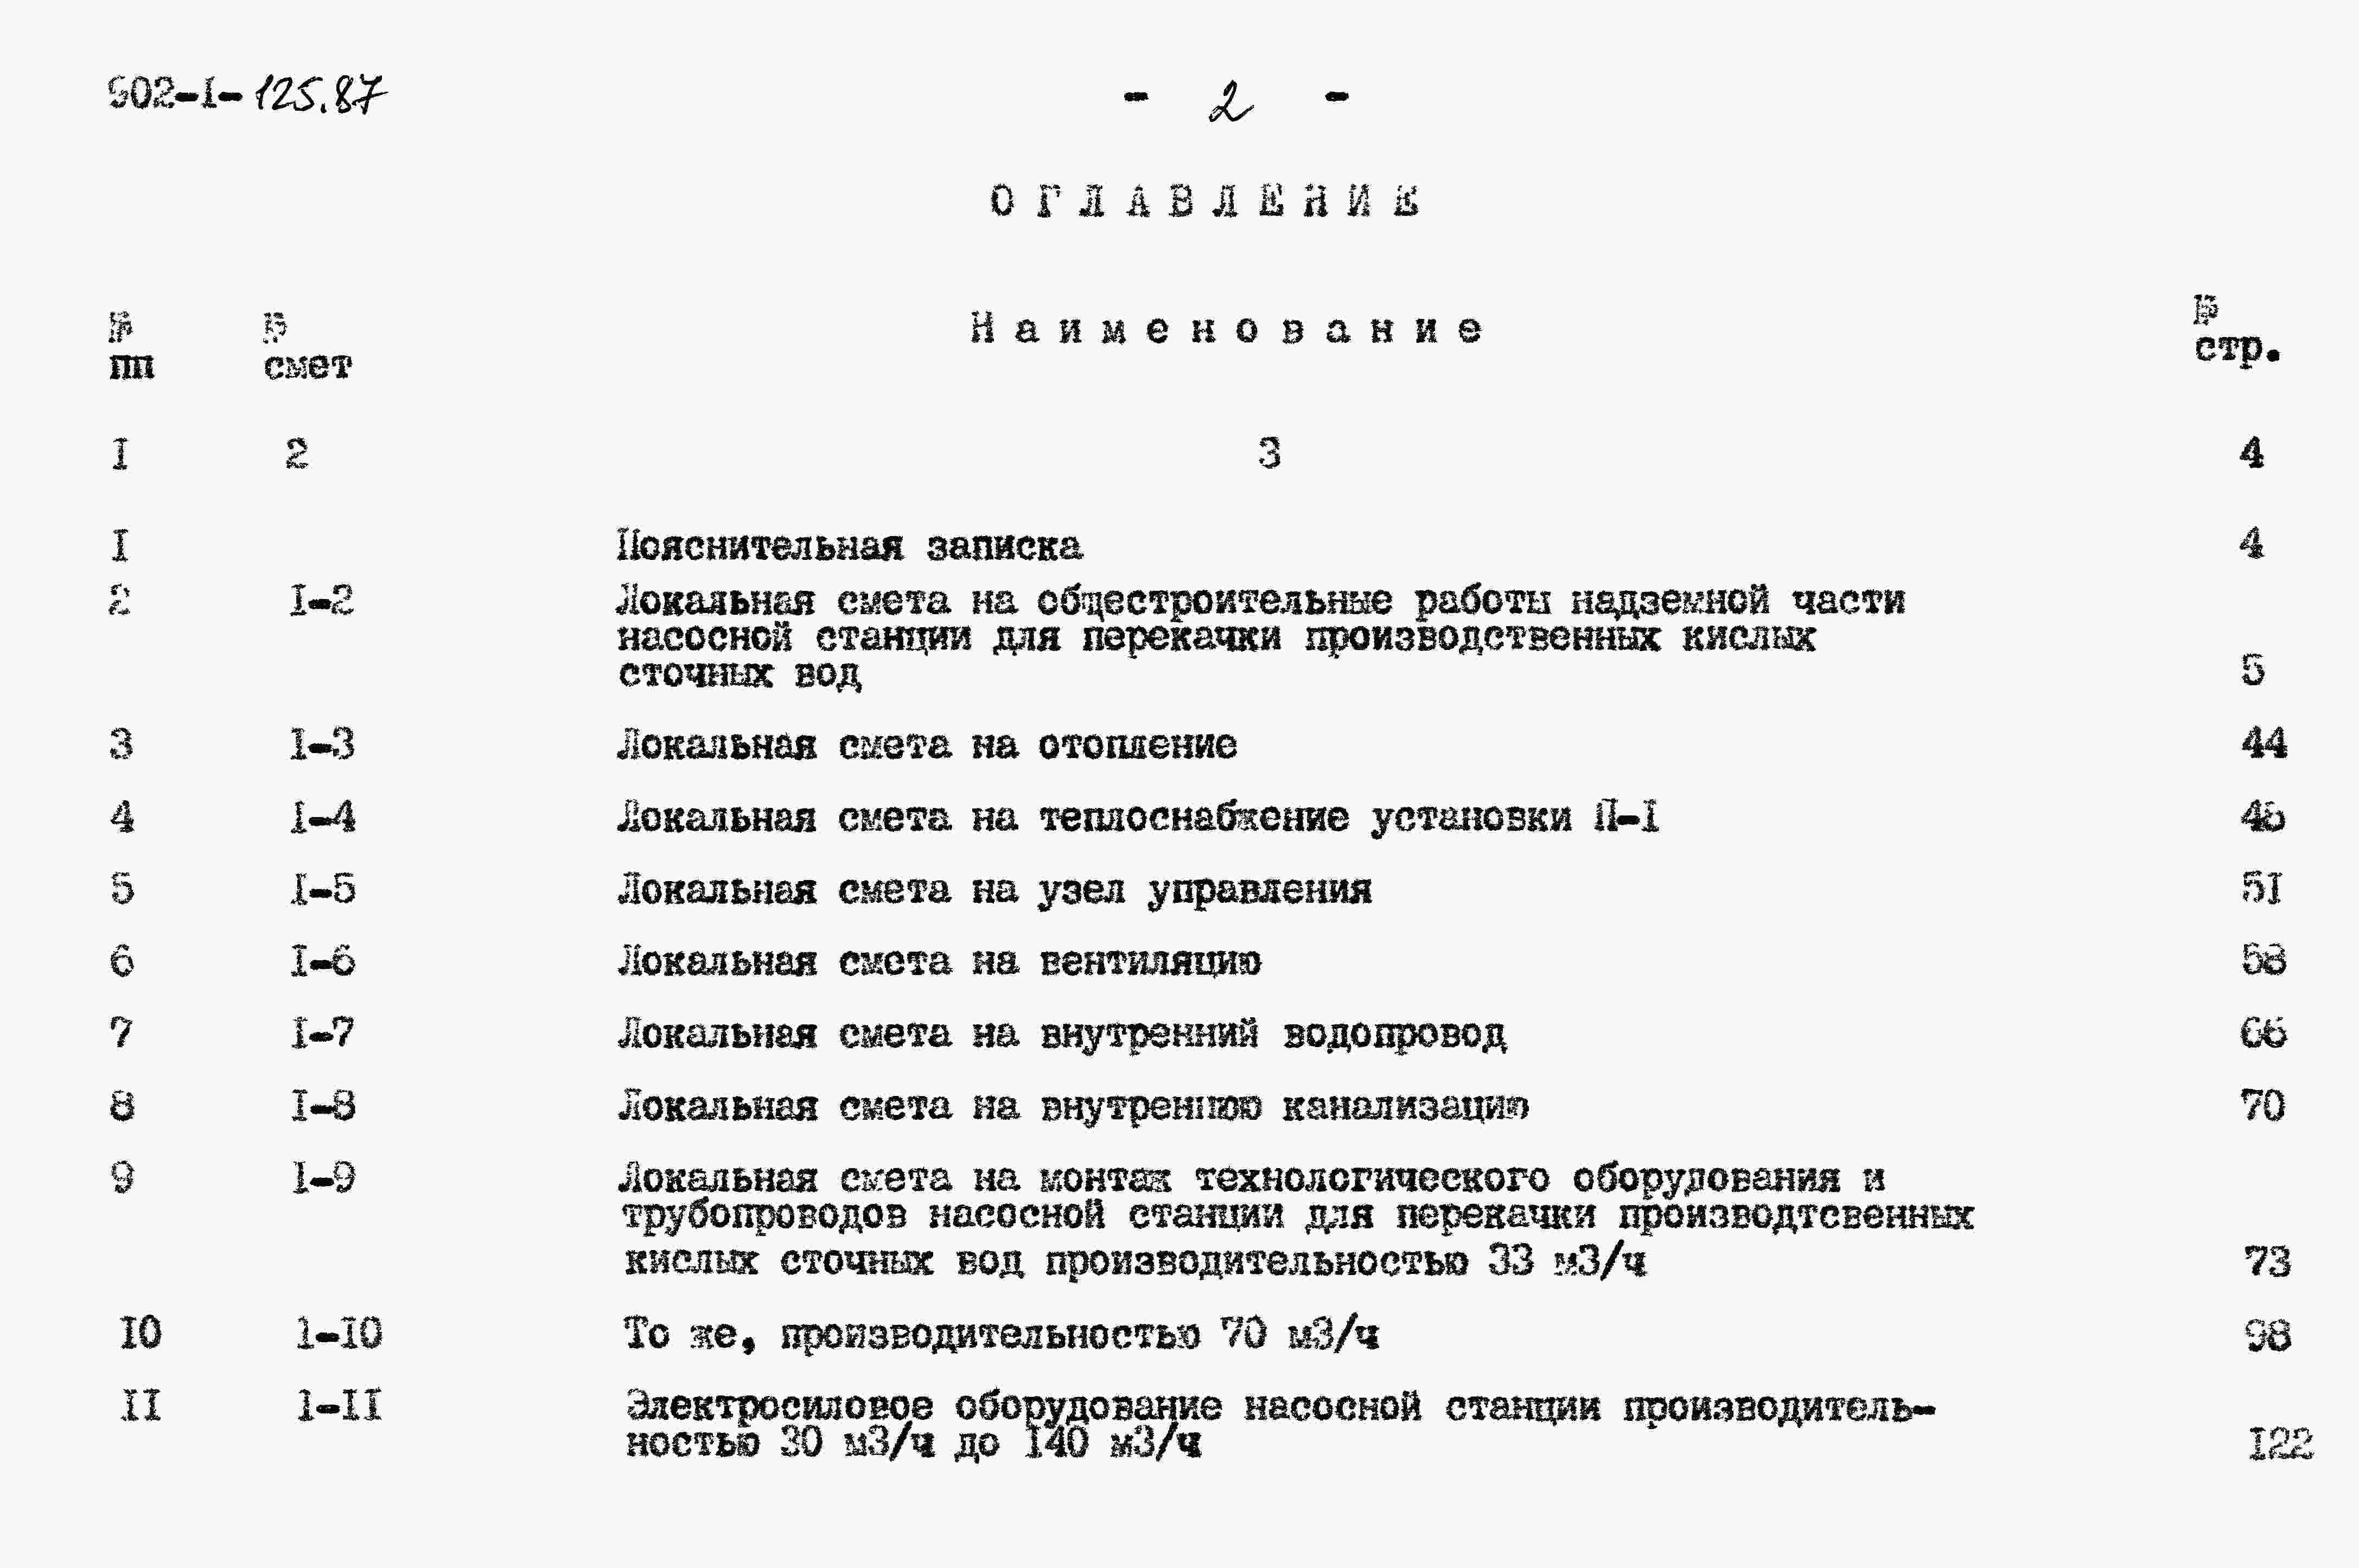 Альбом 7 Сметы. Общая часть (из ТП 902-1-125.87). 